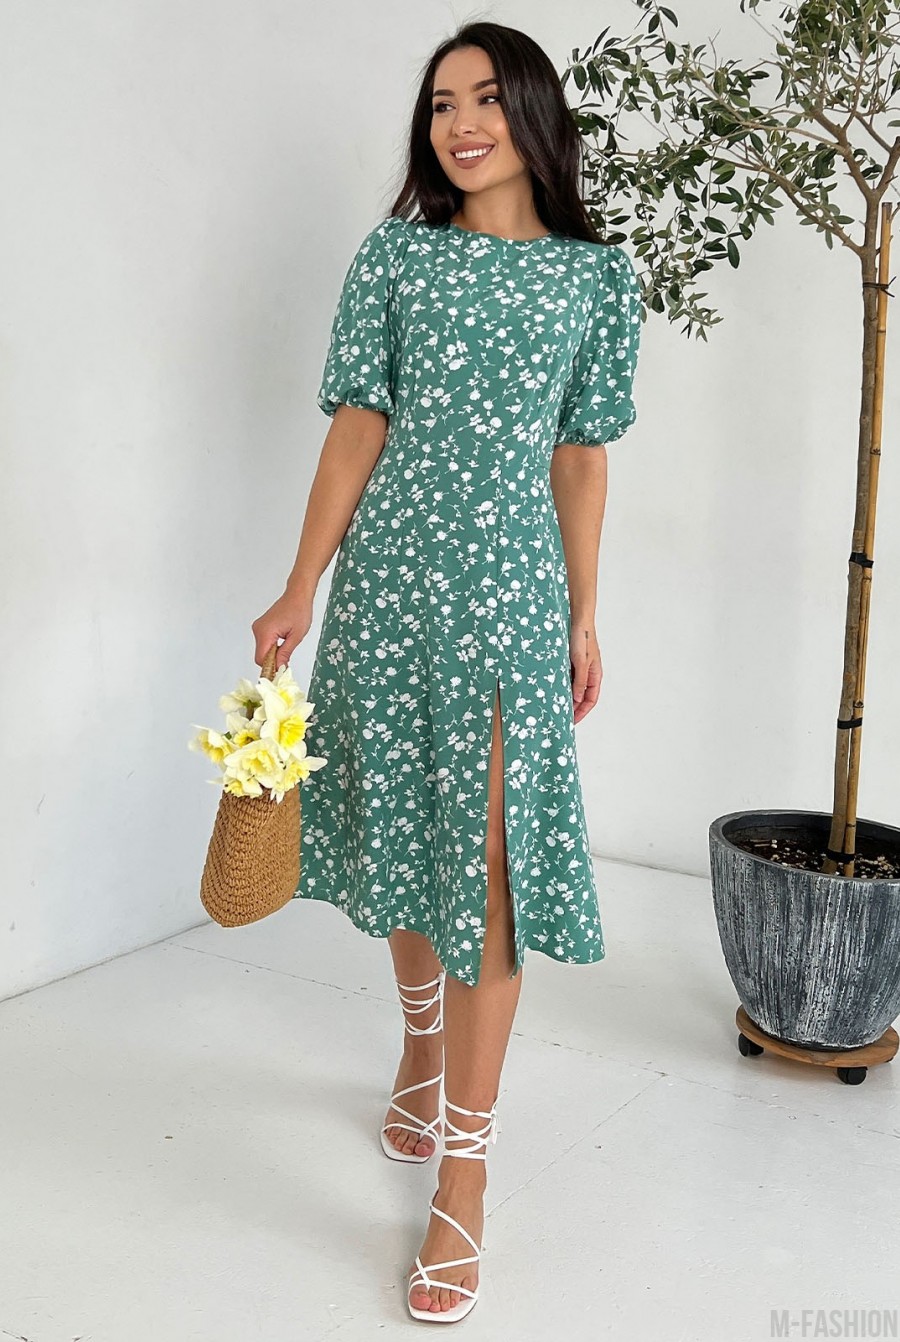 Оливковое цветочное платье с объемными рукавами  - Фото 1